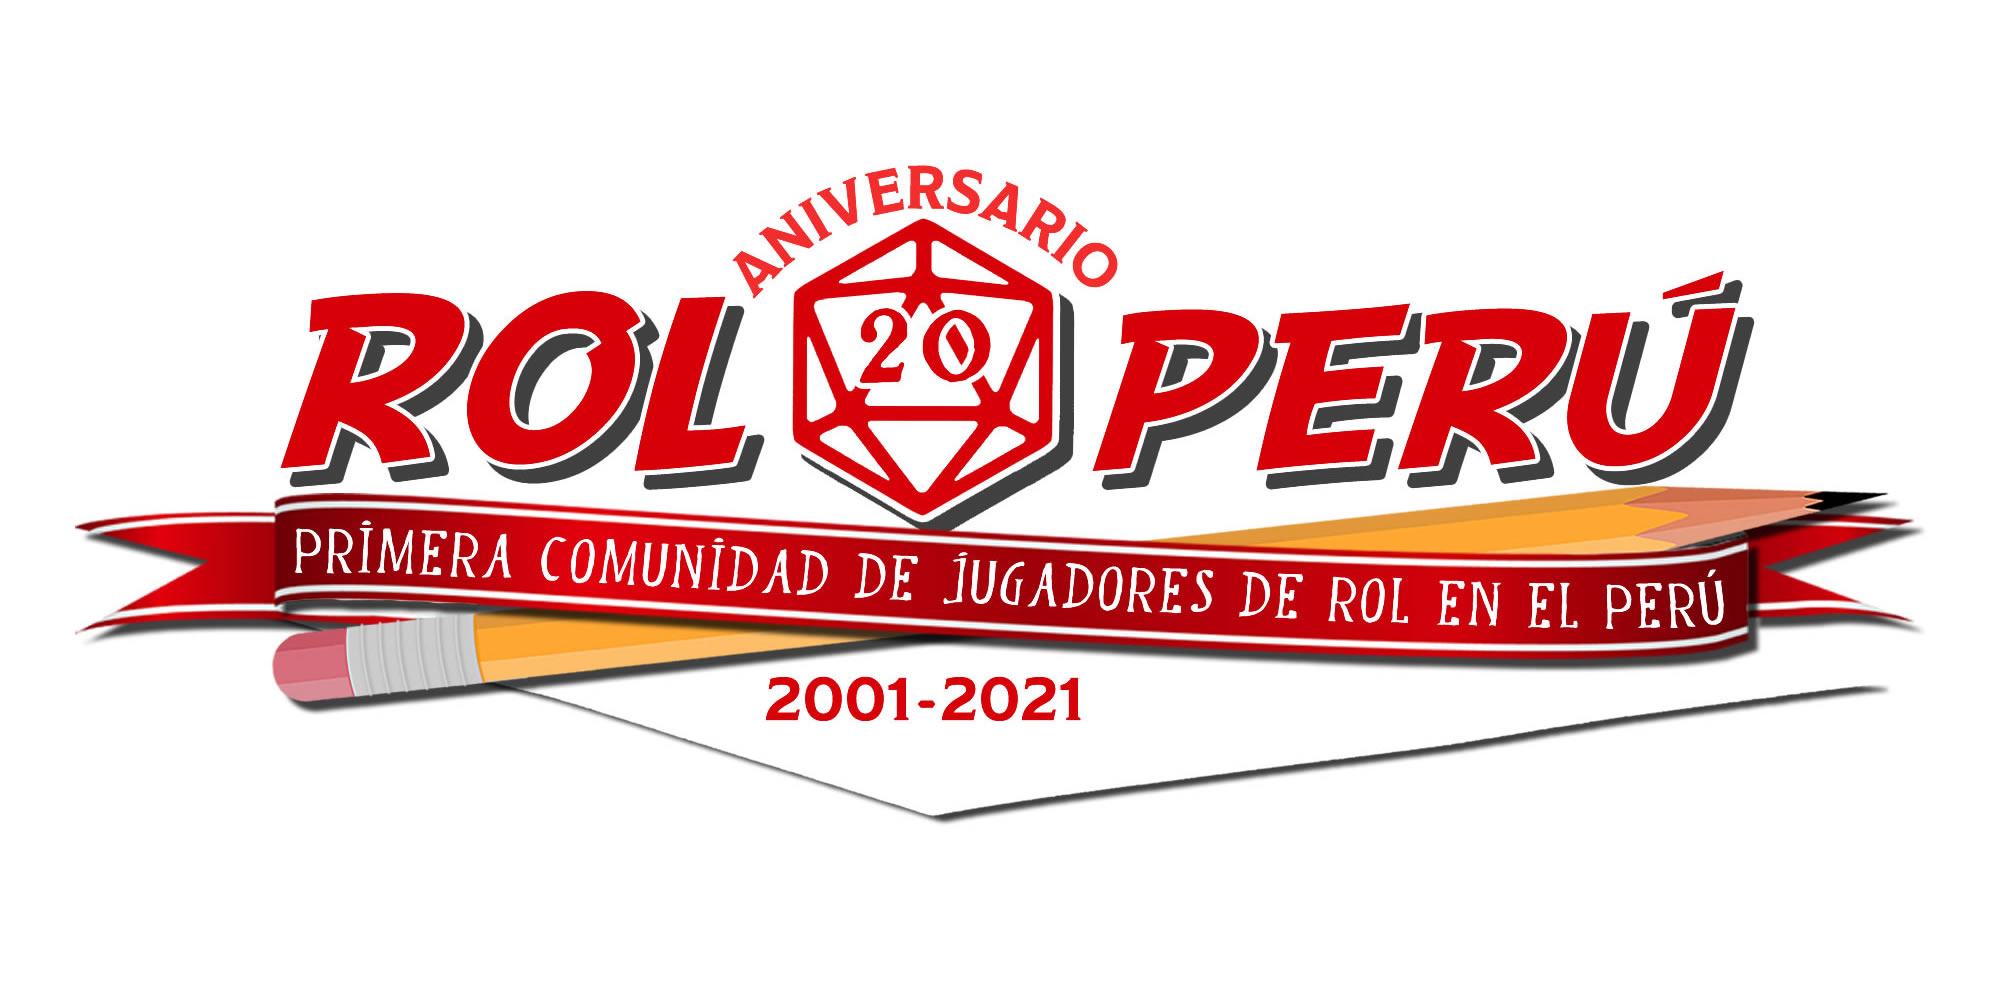 (c) Rol-peru.com